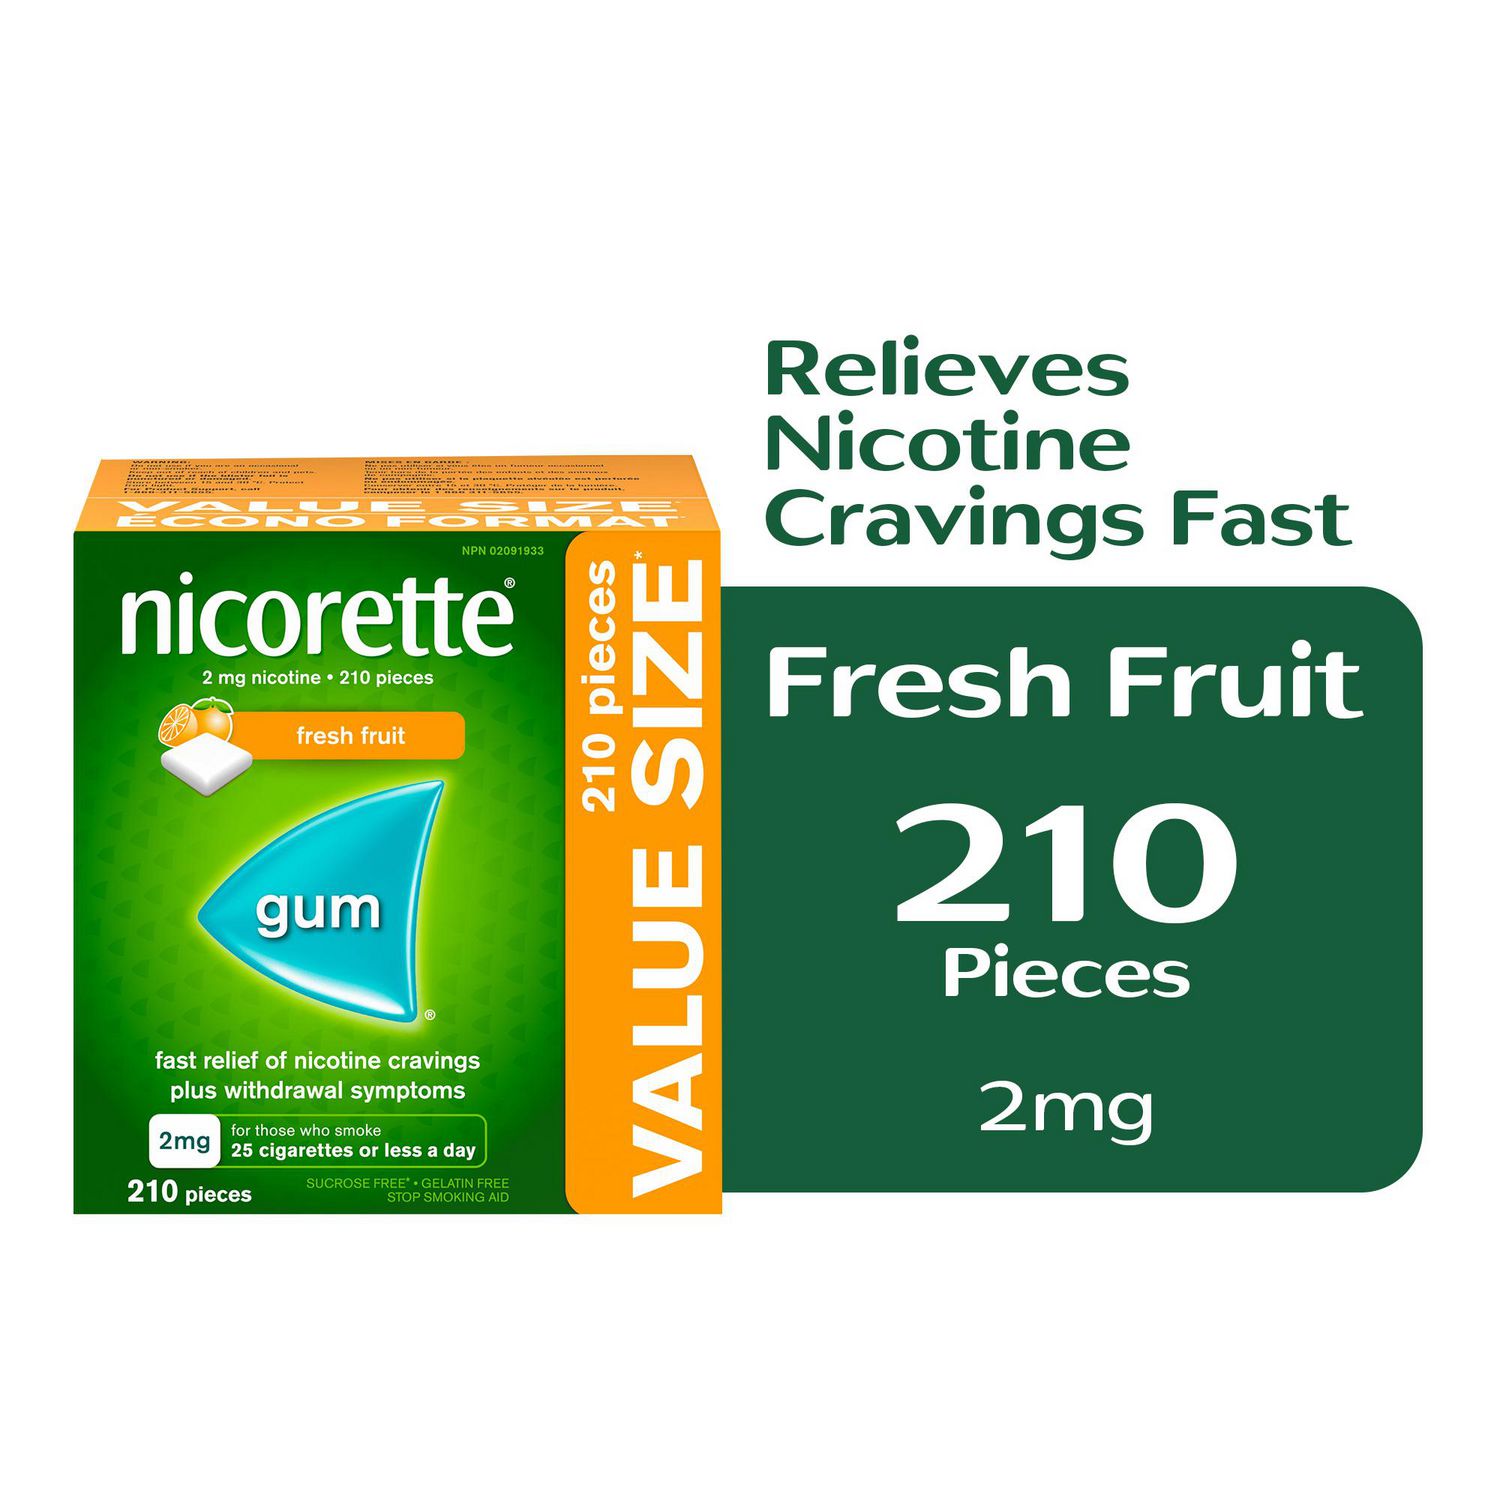 nicorette-nicotine-gum-quit-smoking-aid-fresh-fruit-2mg-walmart-canada